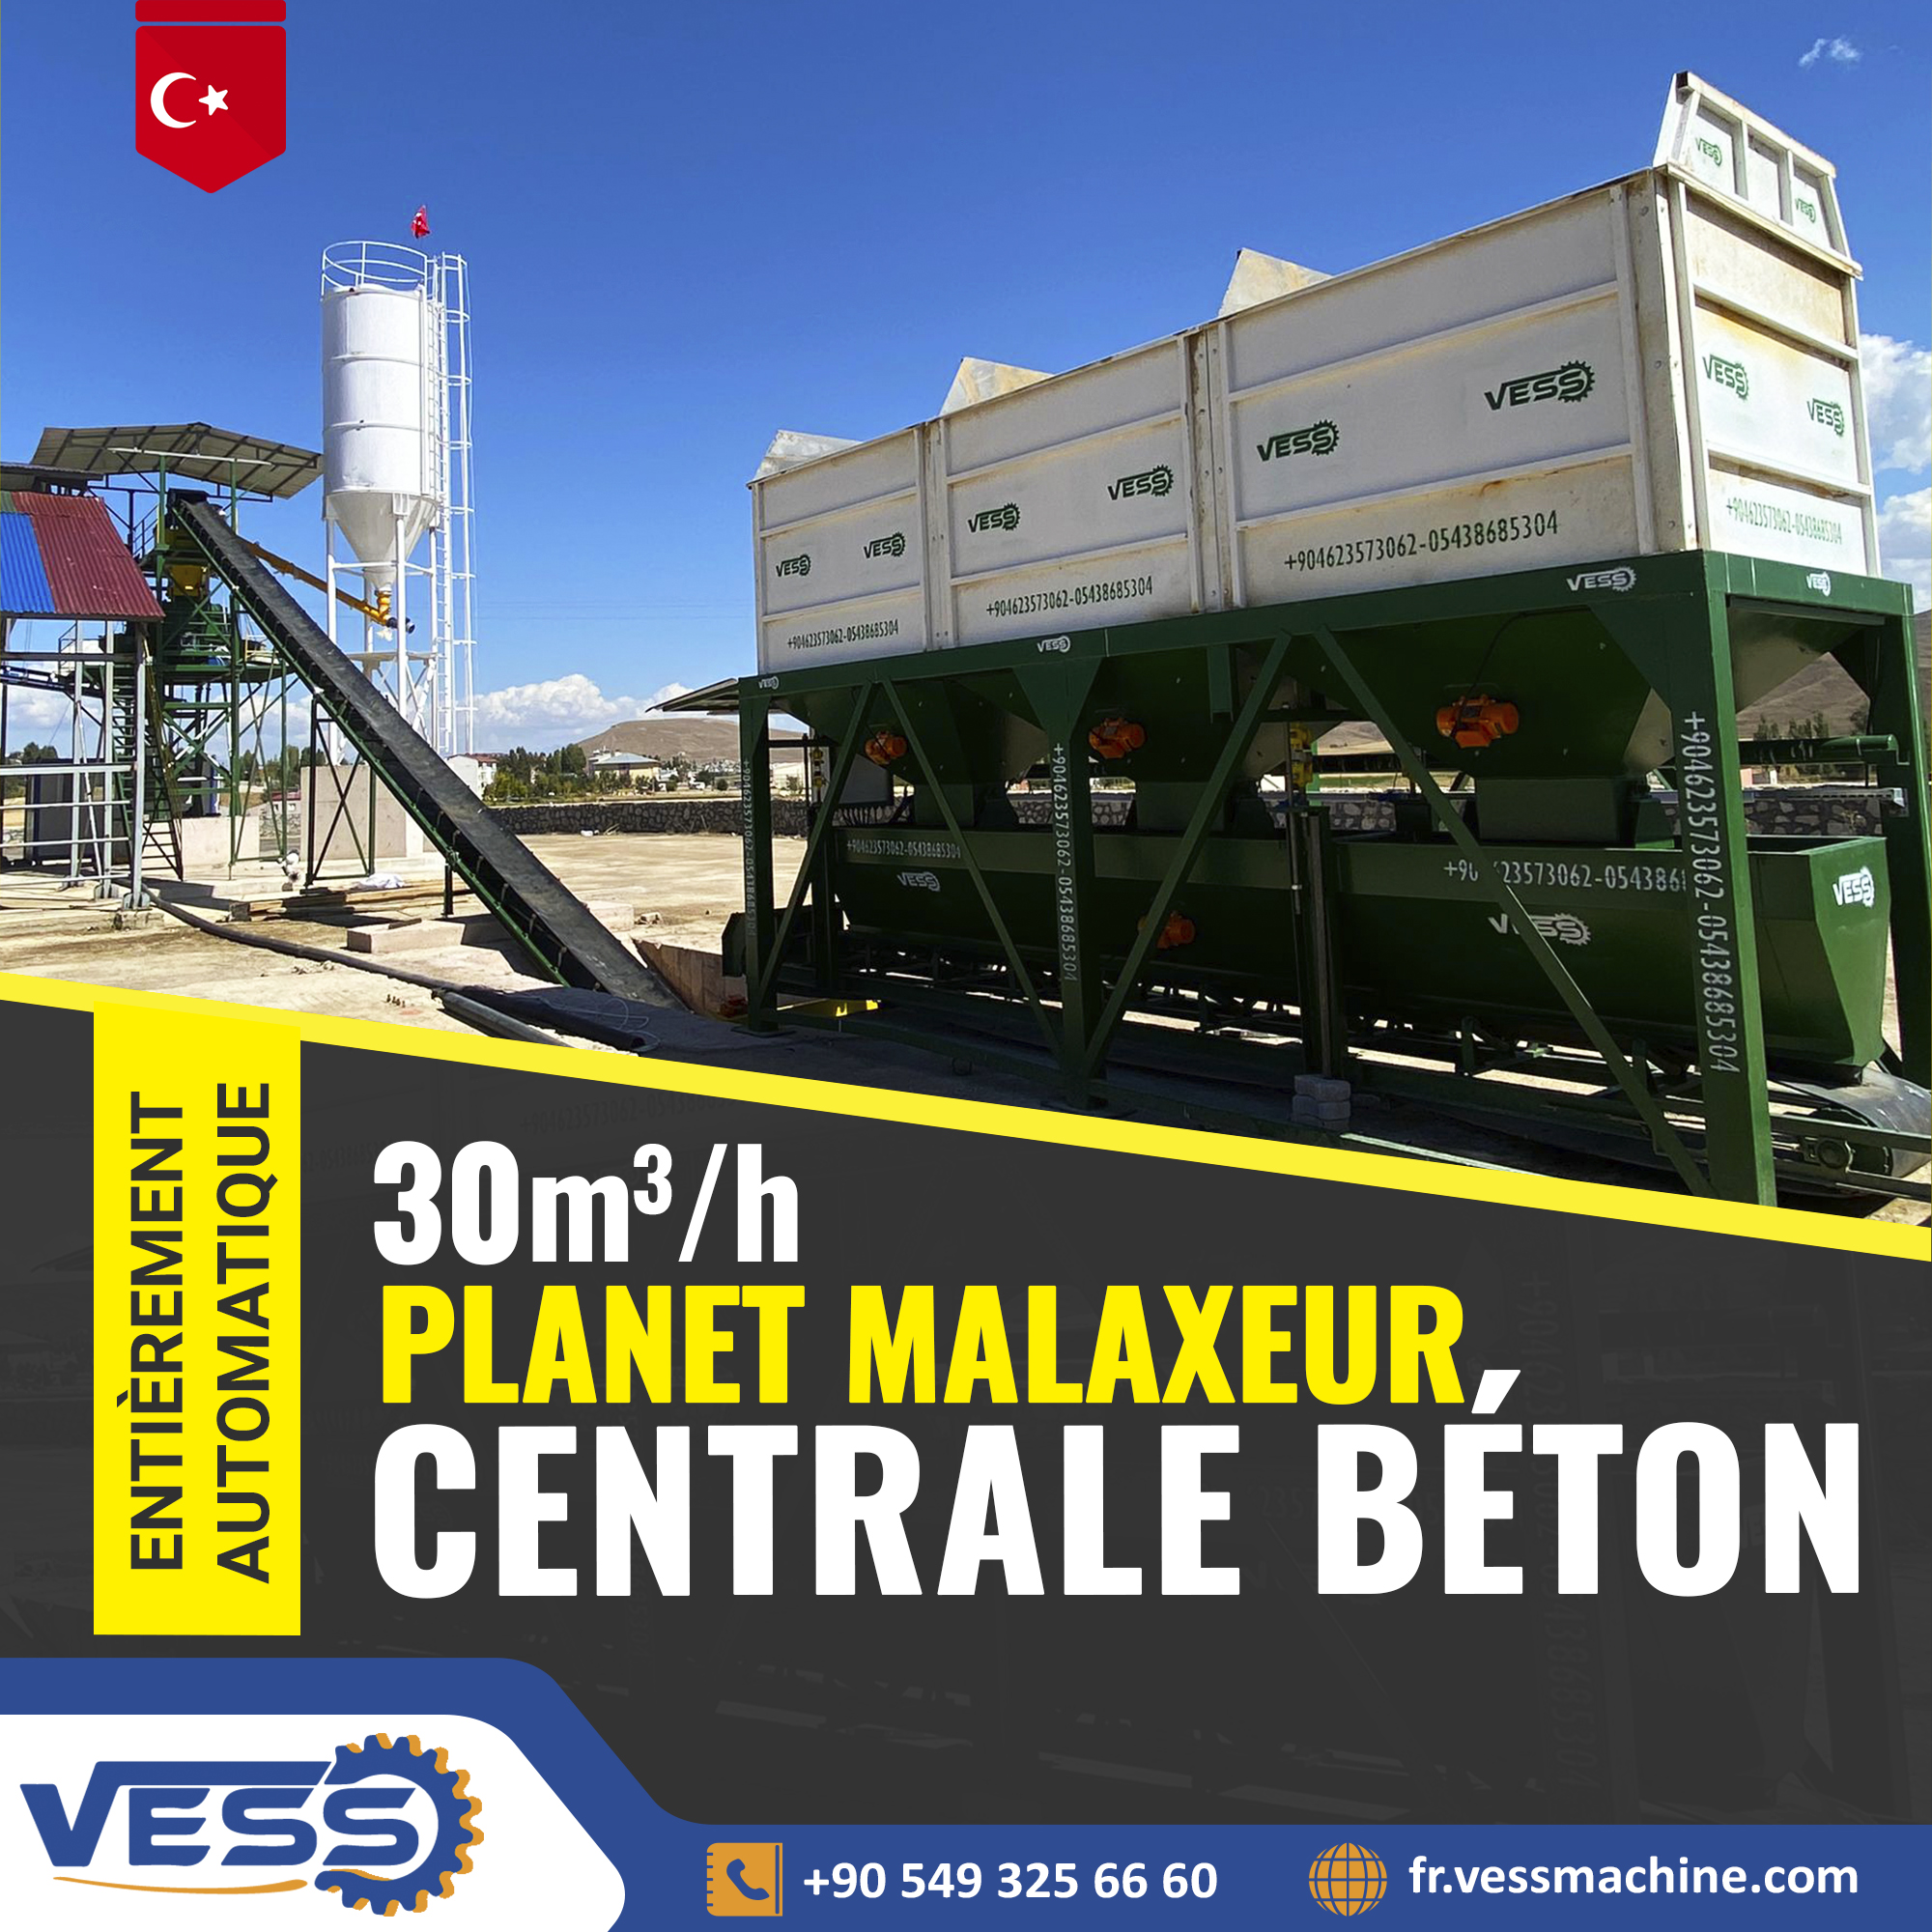 VESS-BetonSantrali-Bayburt-2023-FR-01